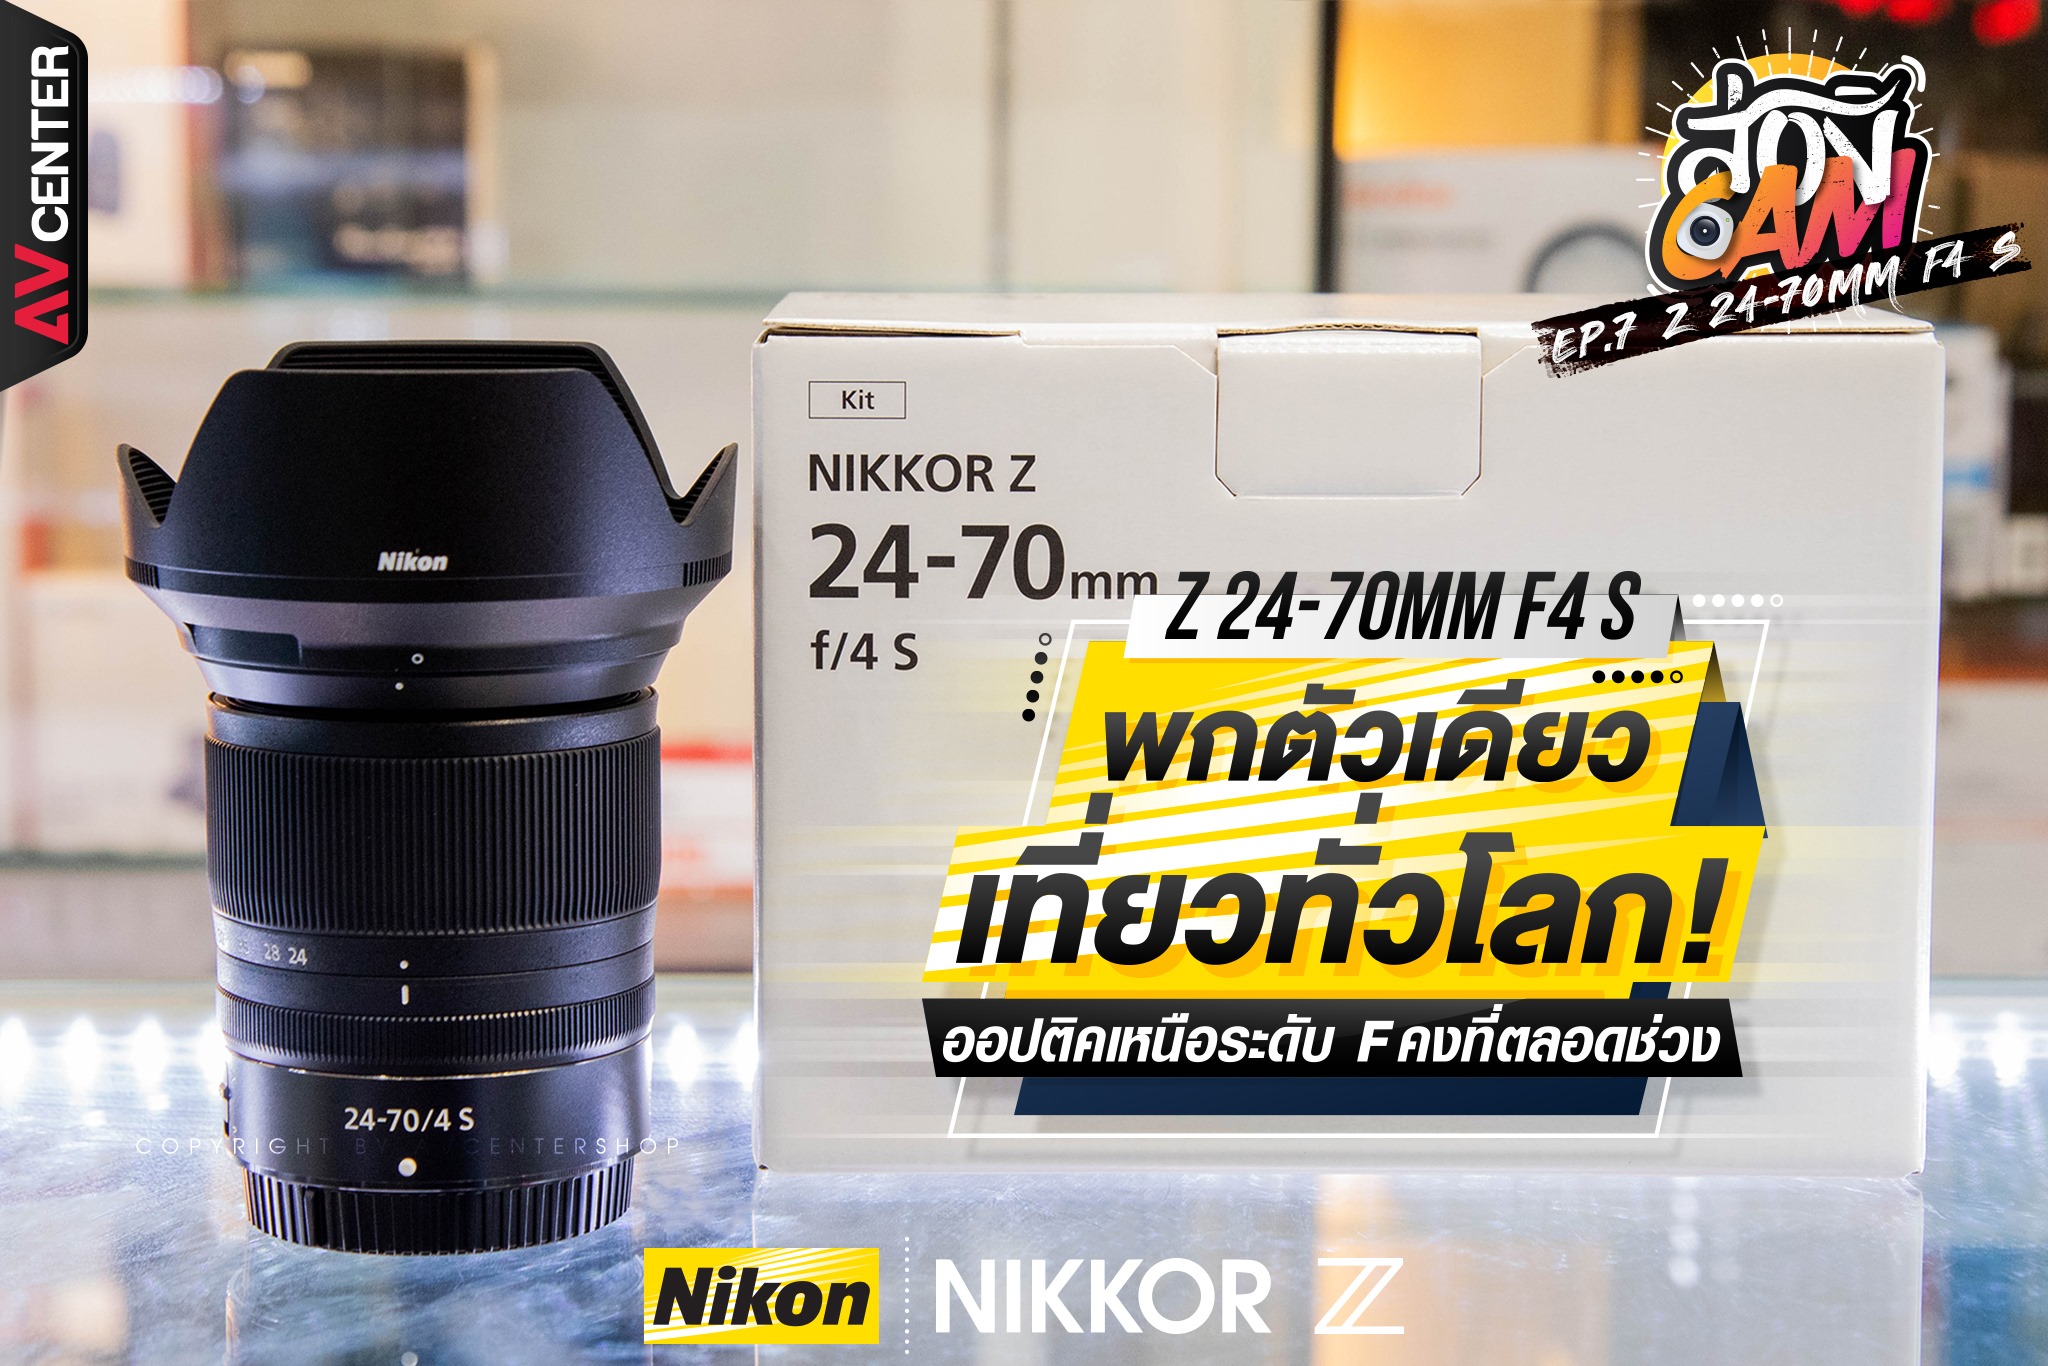 ส่อง Cam : EP.7 "Nikon Nikkor Z 24-70mm F4 S" พกตัวเดียวเที่ยวทั่วโลก ออพติคเหนือระดับ F คงที่ตลอดช่วง